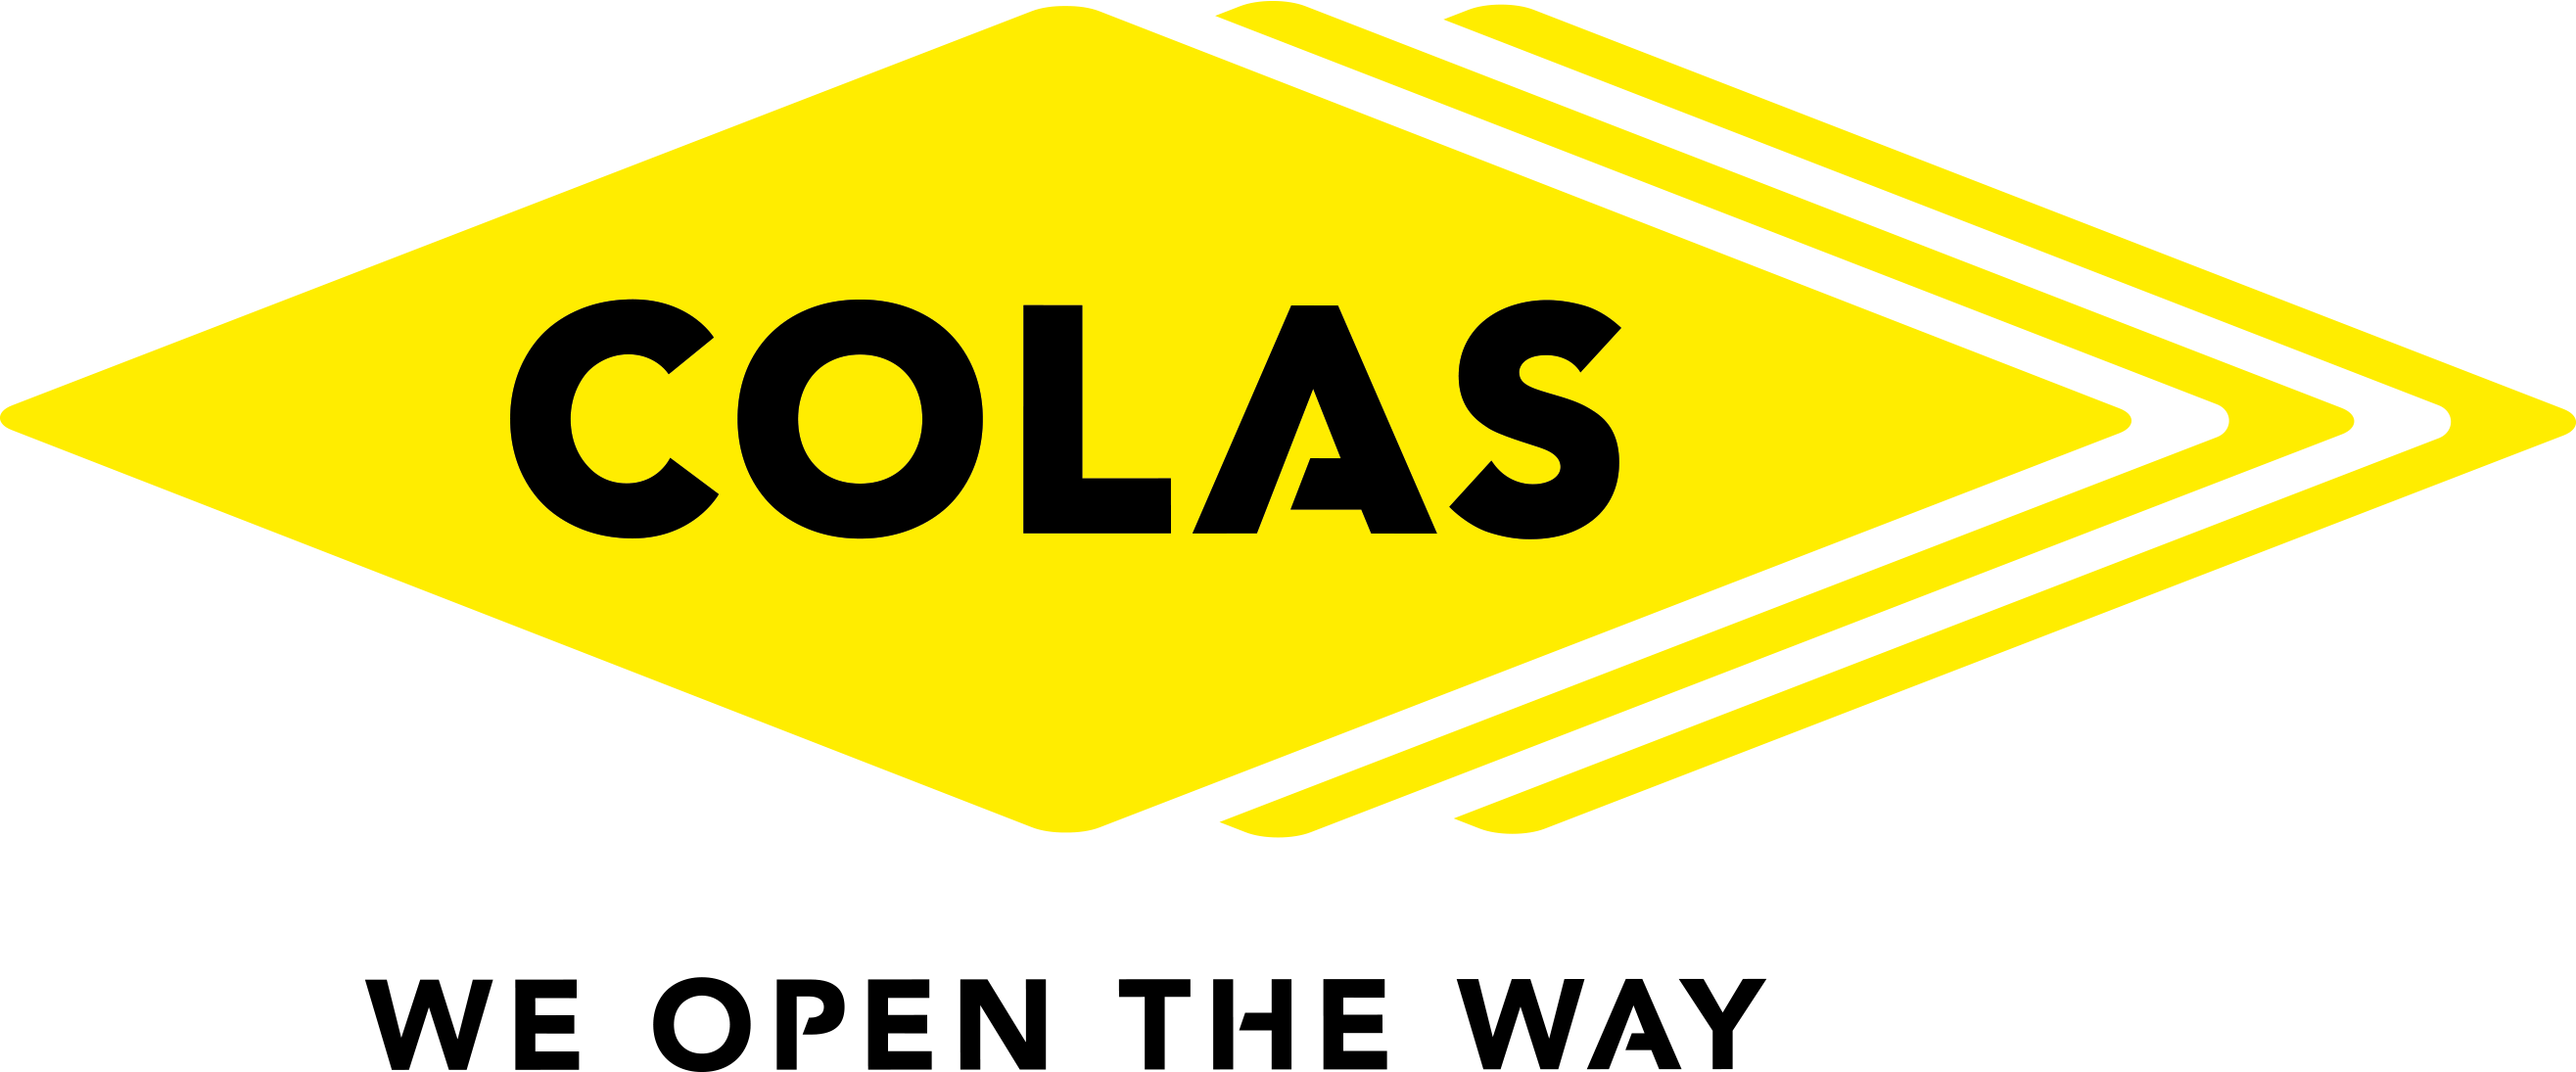 Logo Colas - We Open the Way : slogan "We Open the Way" accompagnant le nom "Colas" en lettres stylisées, sur fond transparent.